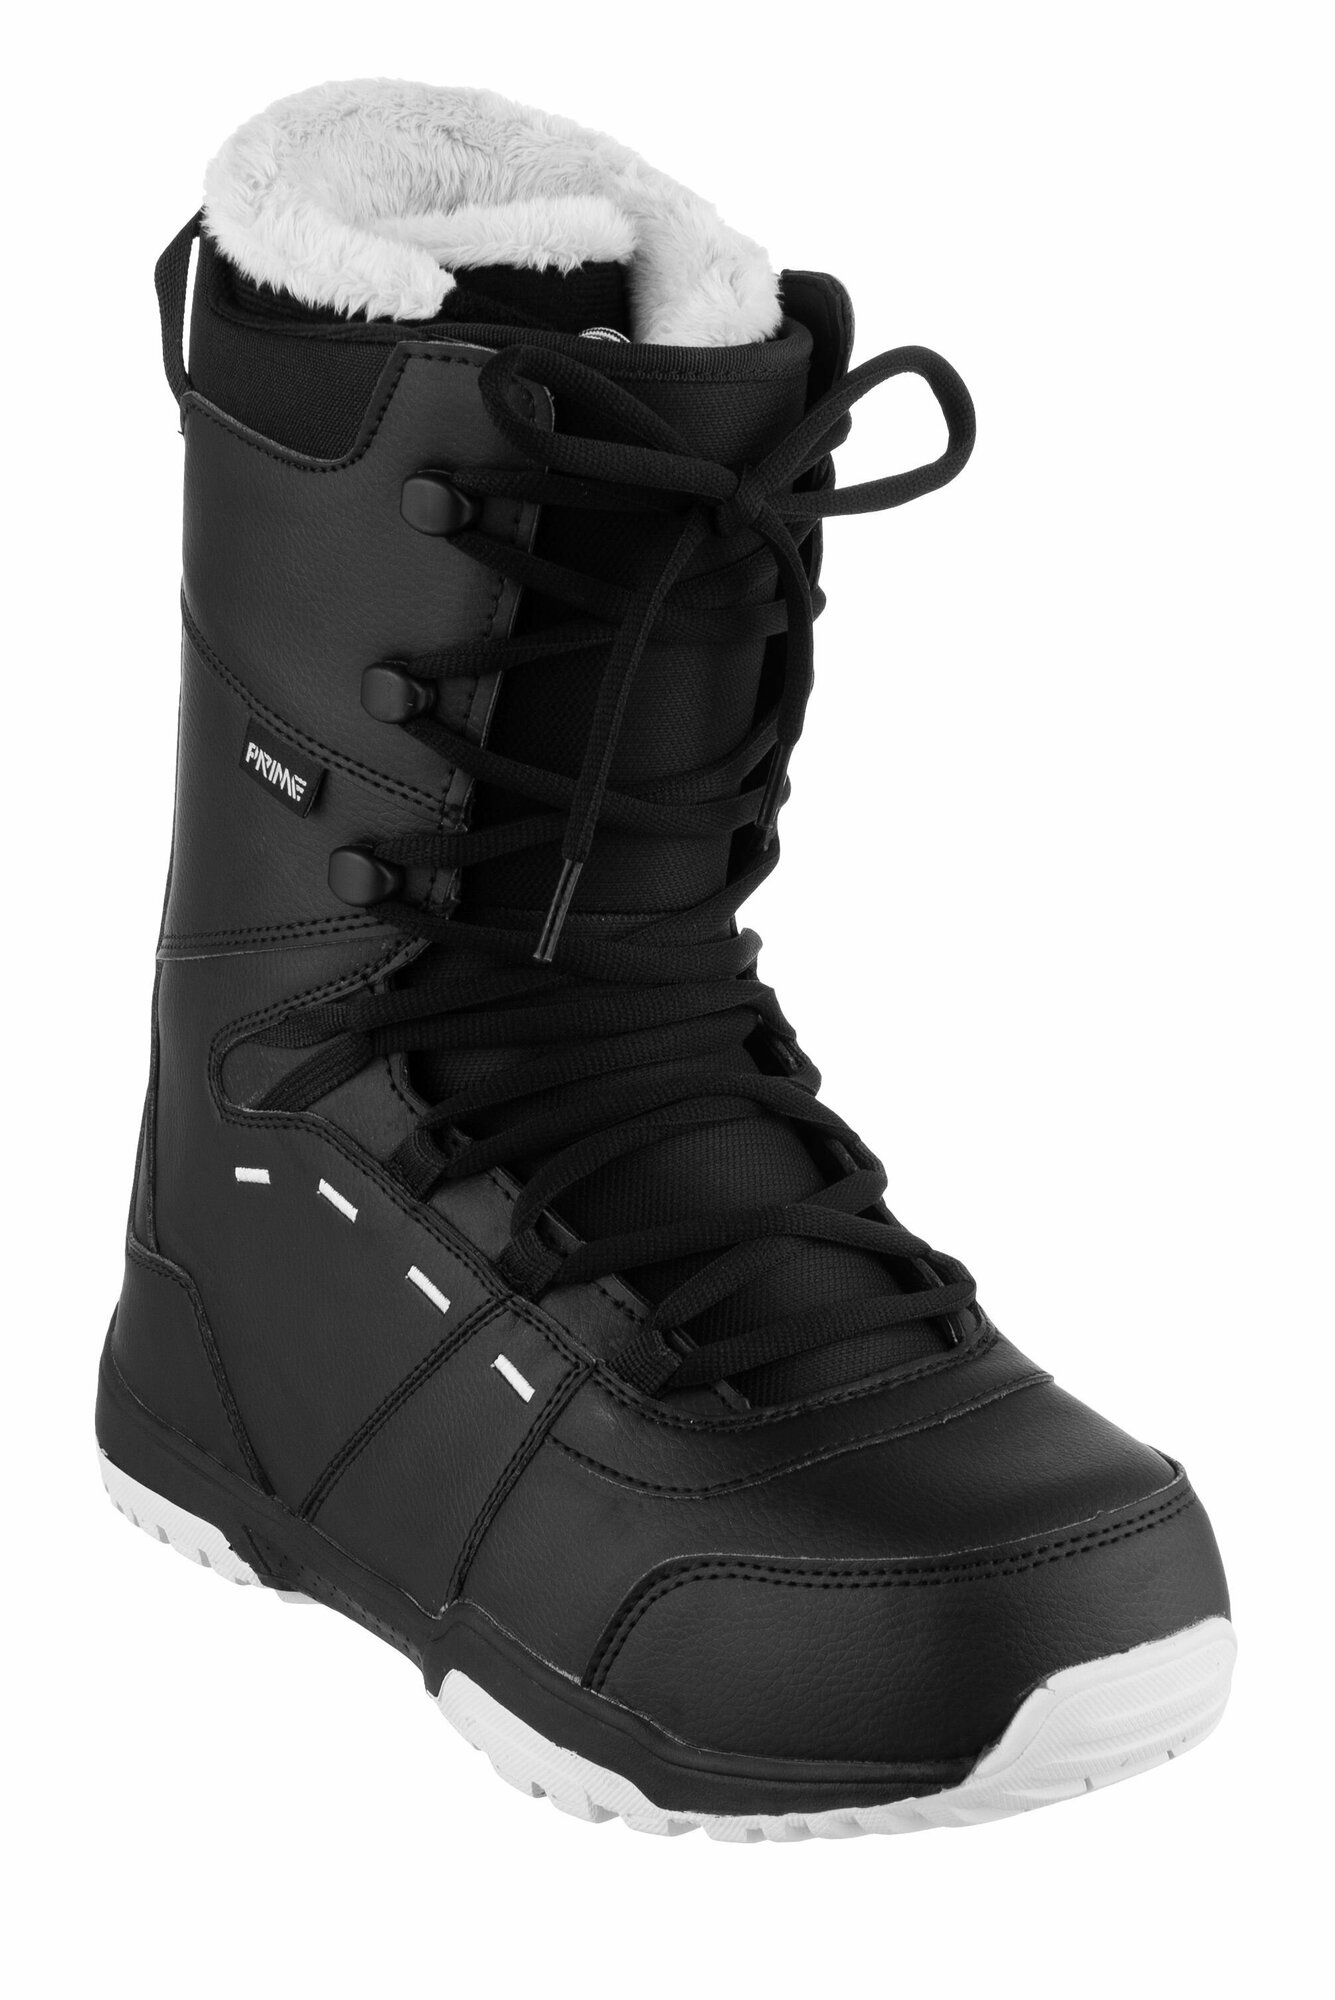 Ботинки сноубордические PRIME FUN-F1 Black (40 RU / 26,5 cm)